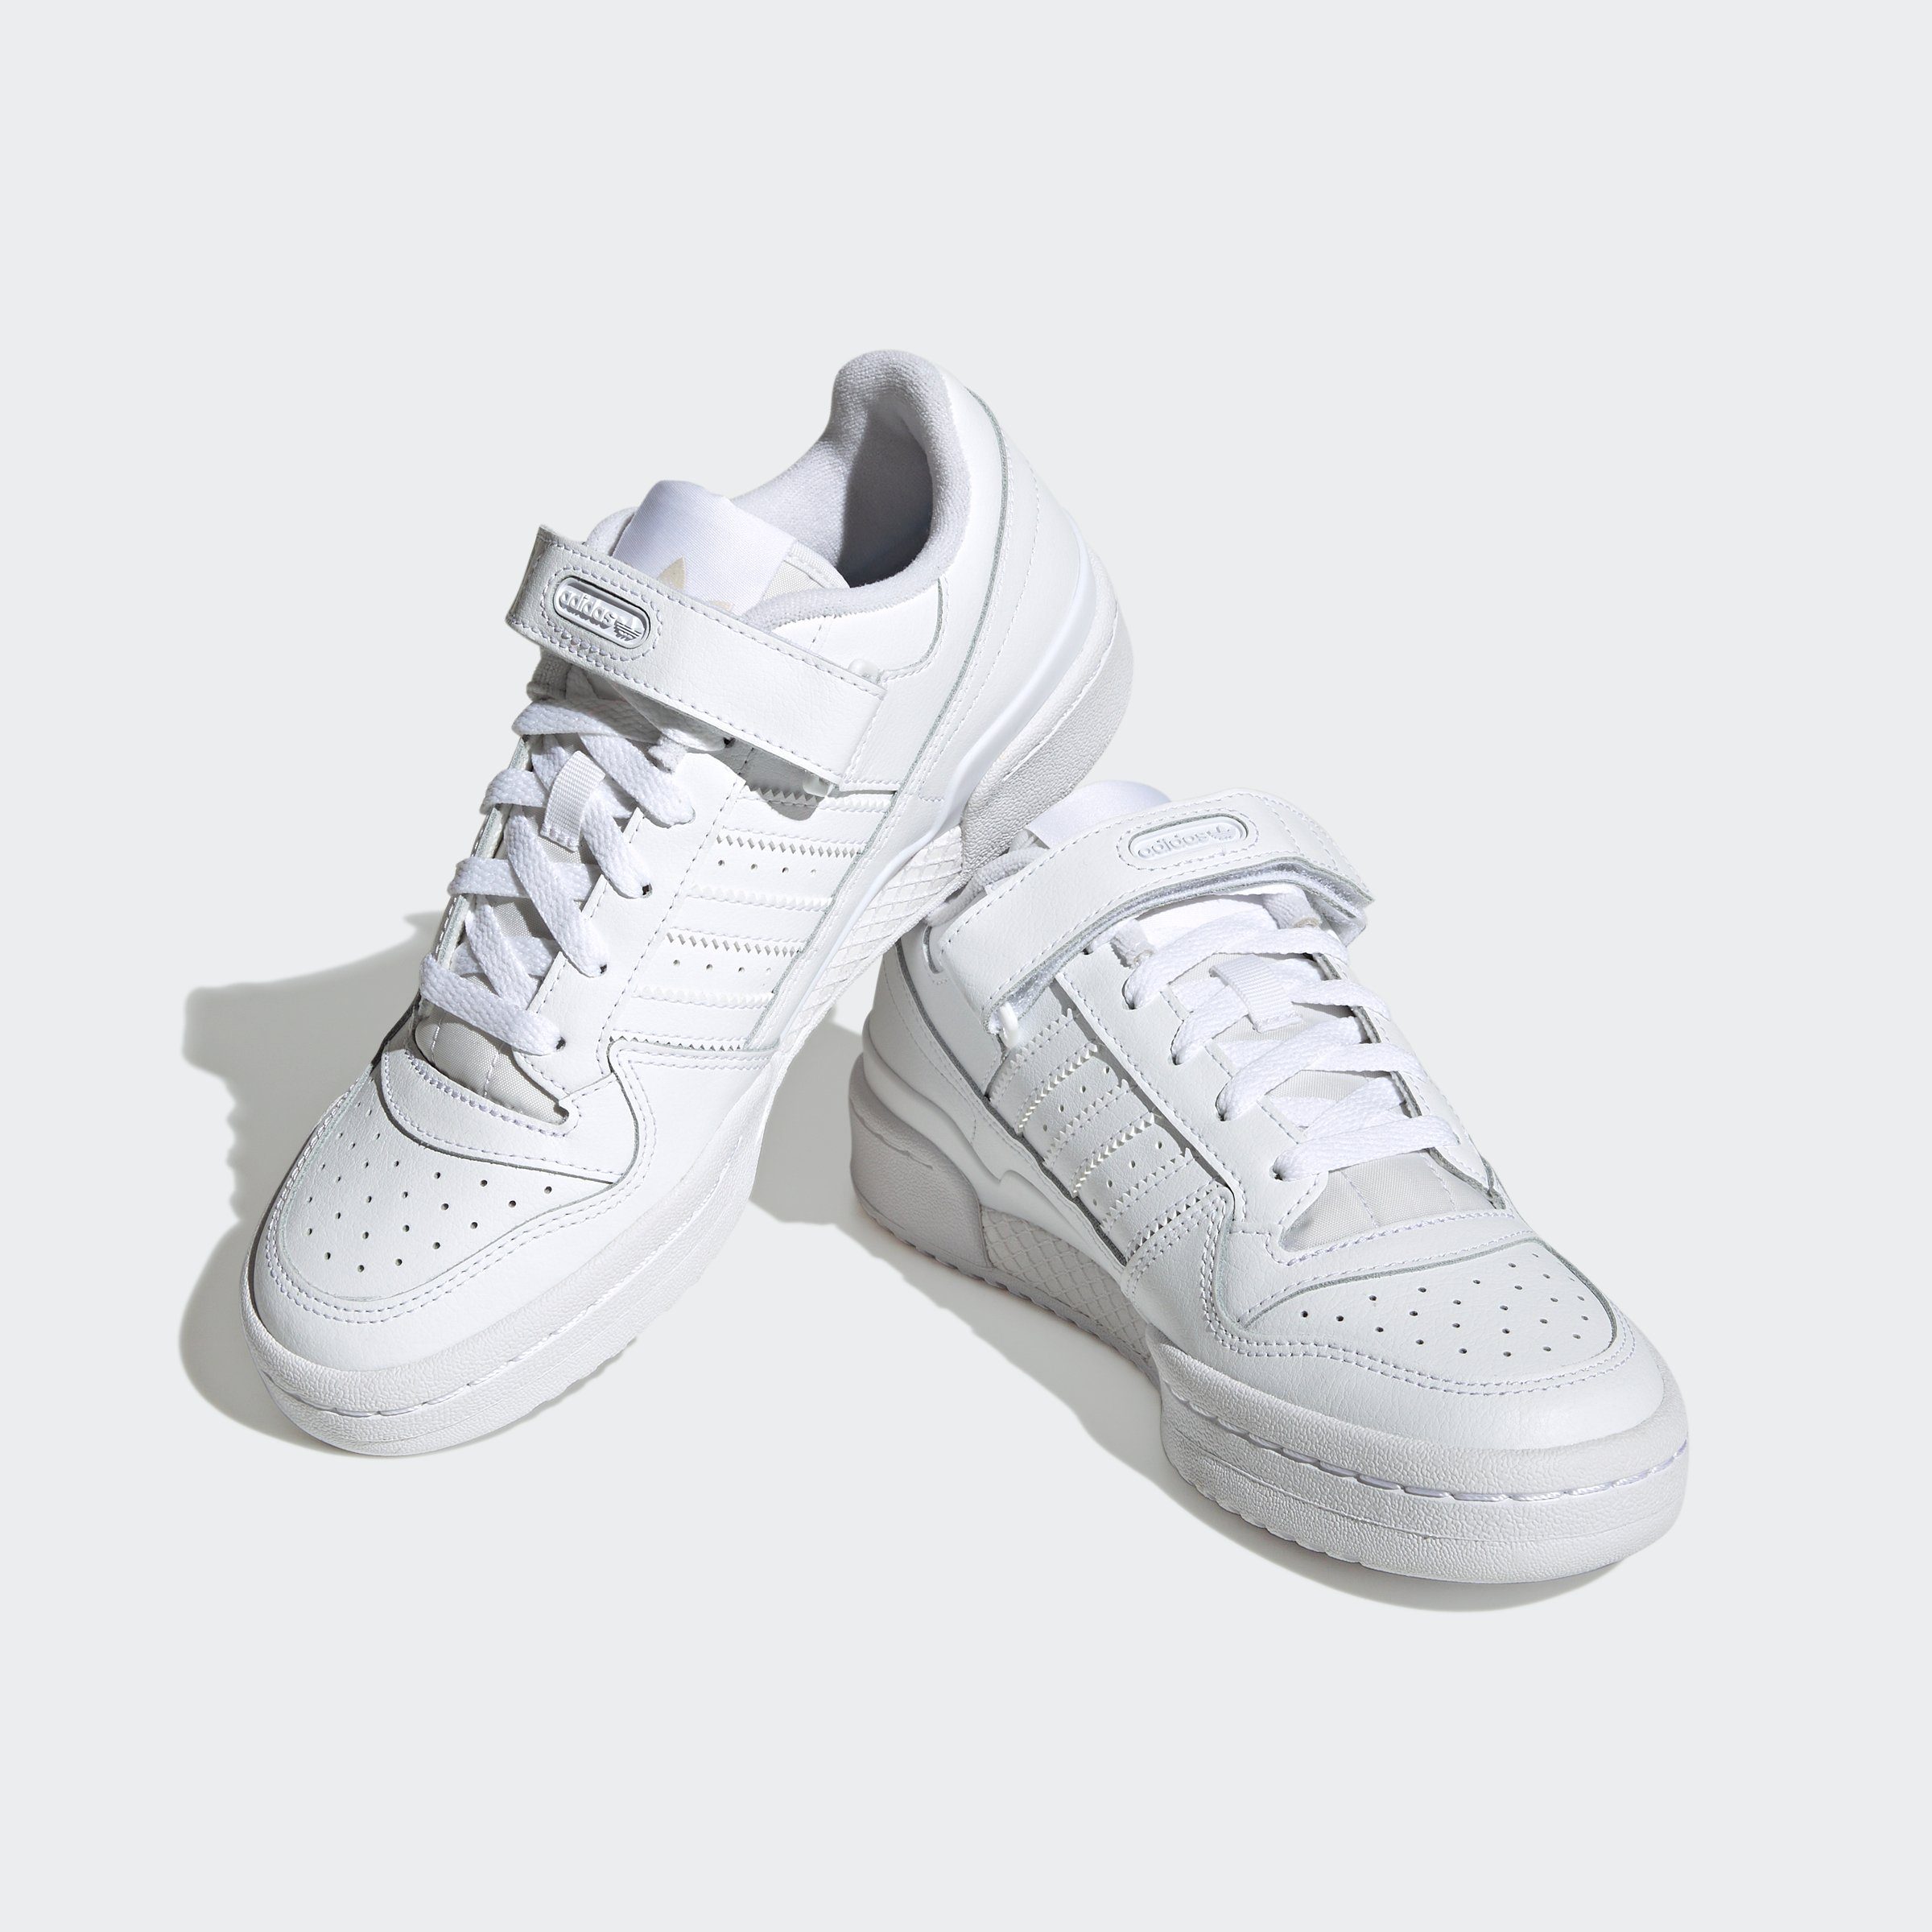 [Kostenlose landesweite Lieferung] adidas Originals FORUM Cloud Cloud White Sneaker White / Cloud / White LOW